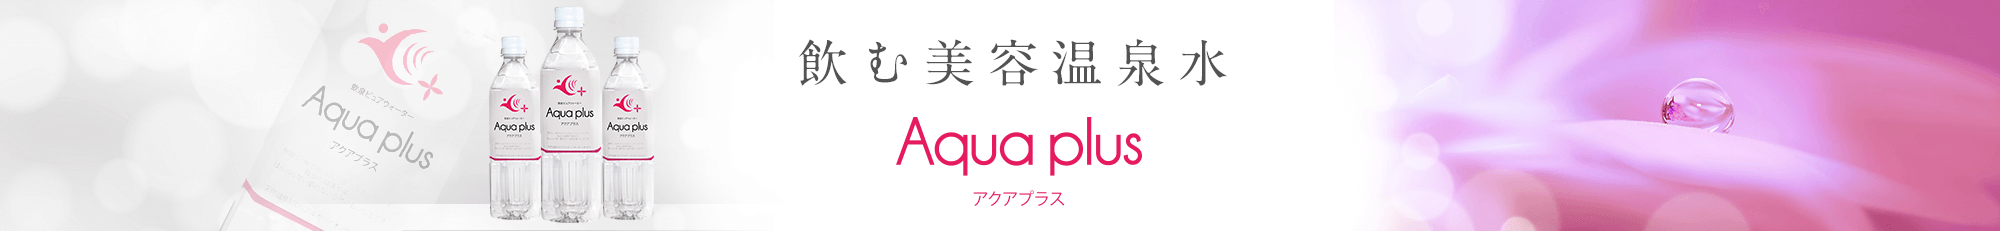 Aqua plus